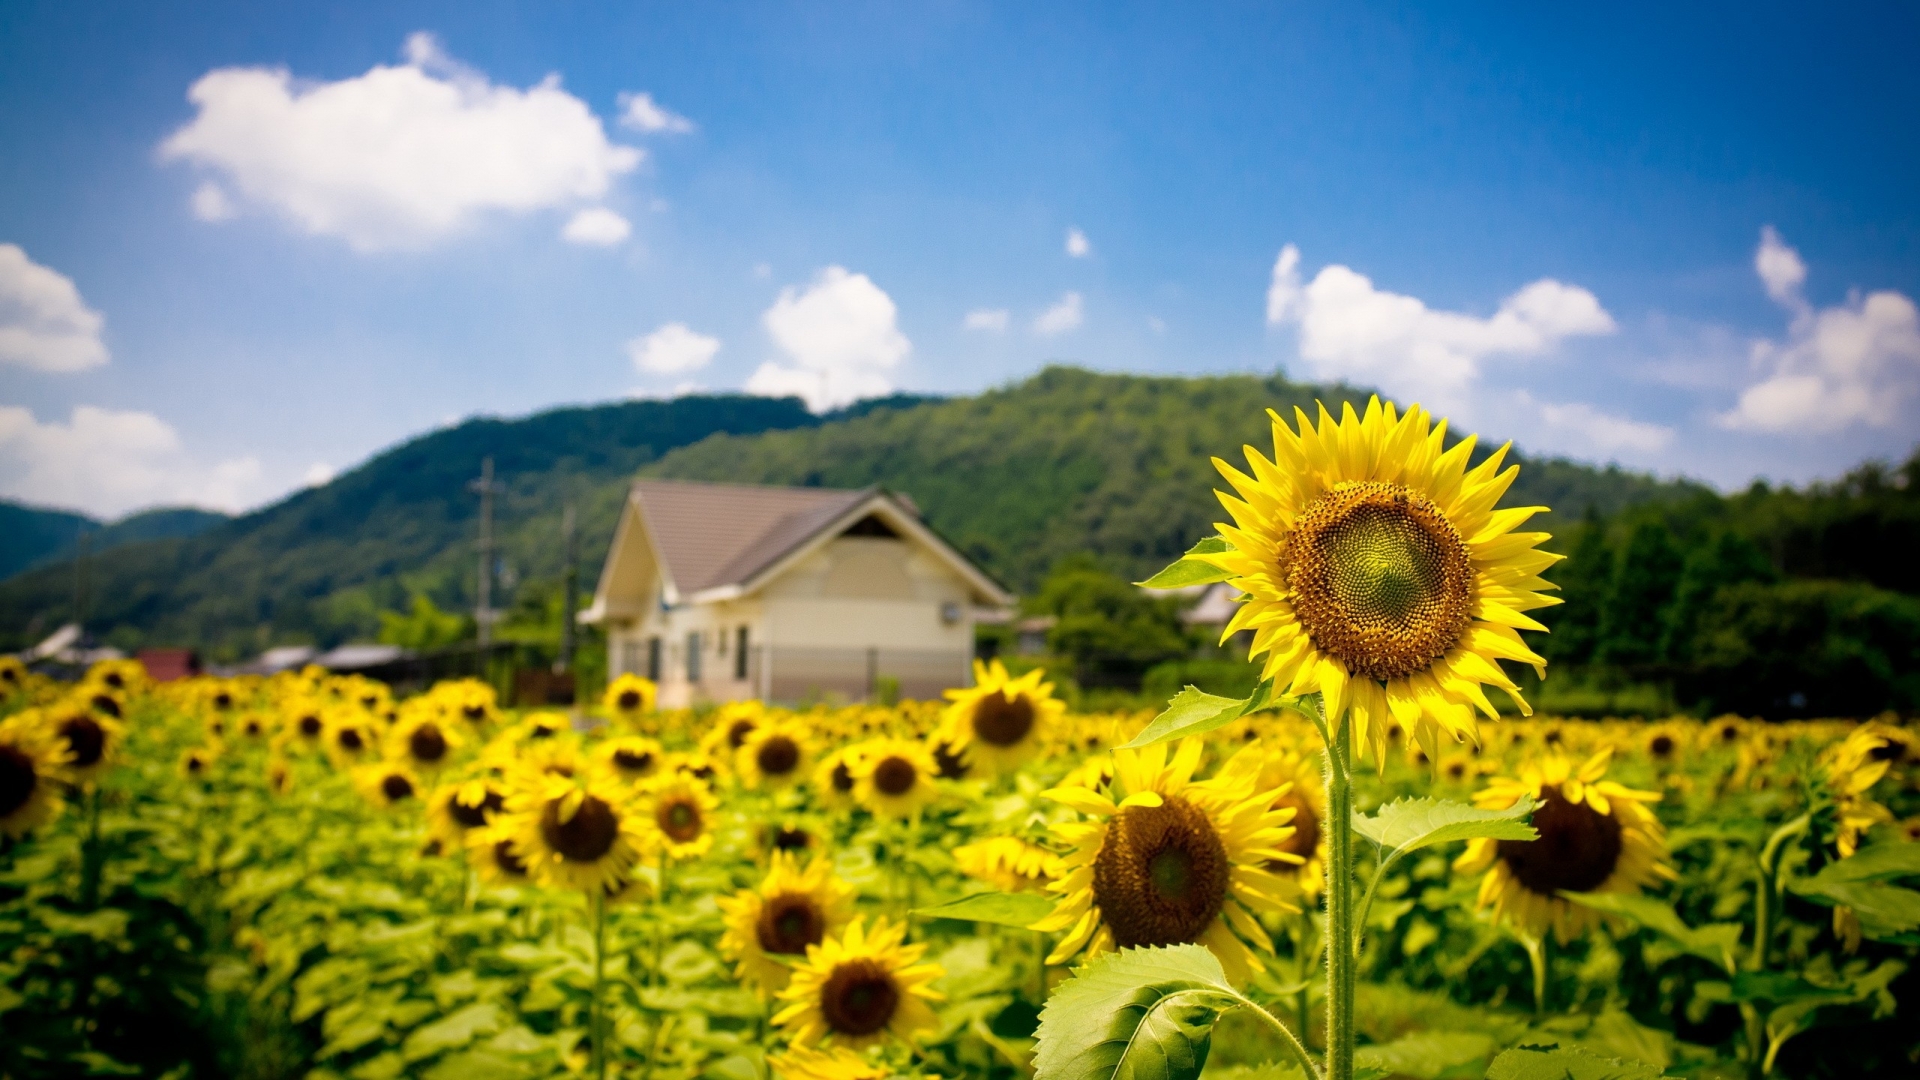 Sunflower Land for 1920 x 1080 HDTV 1080p resolution